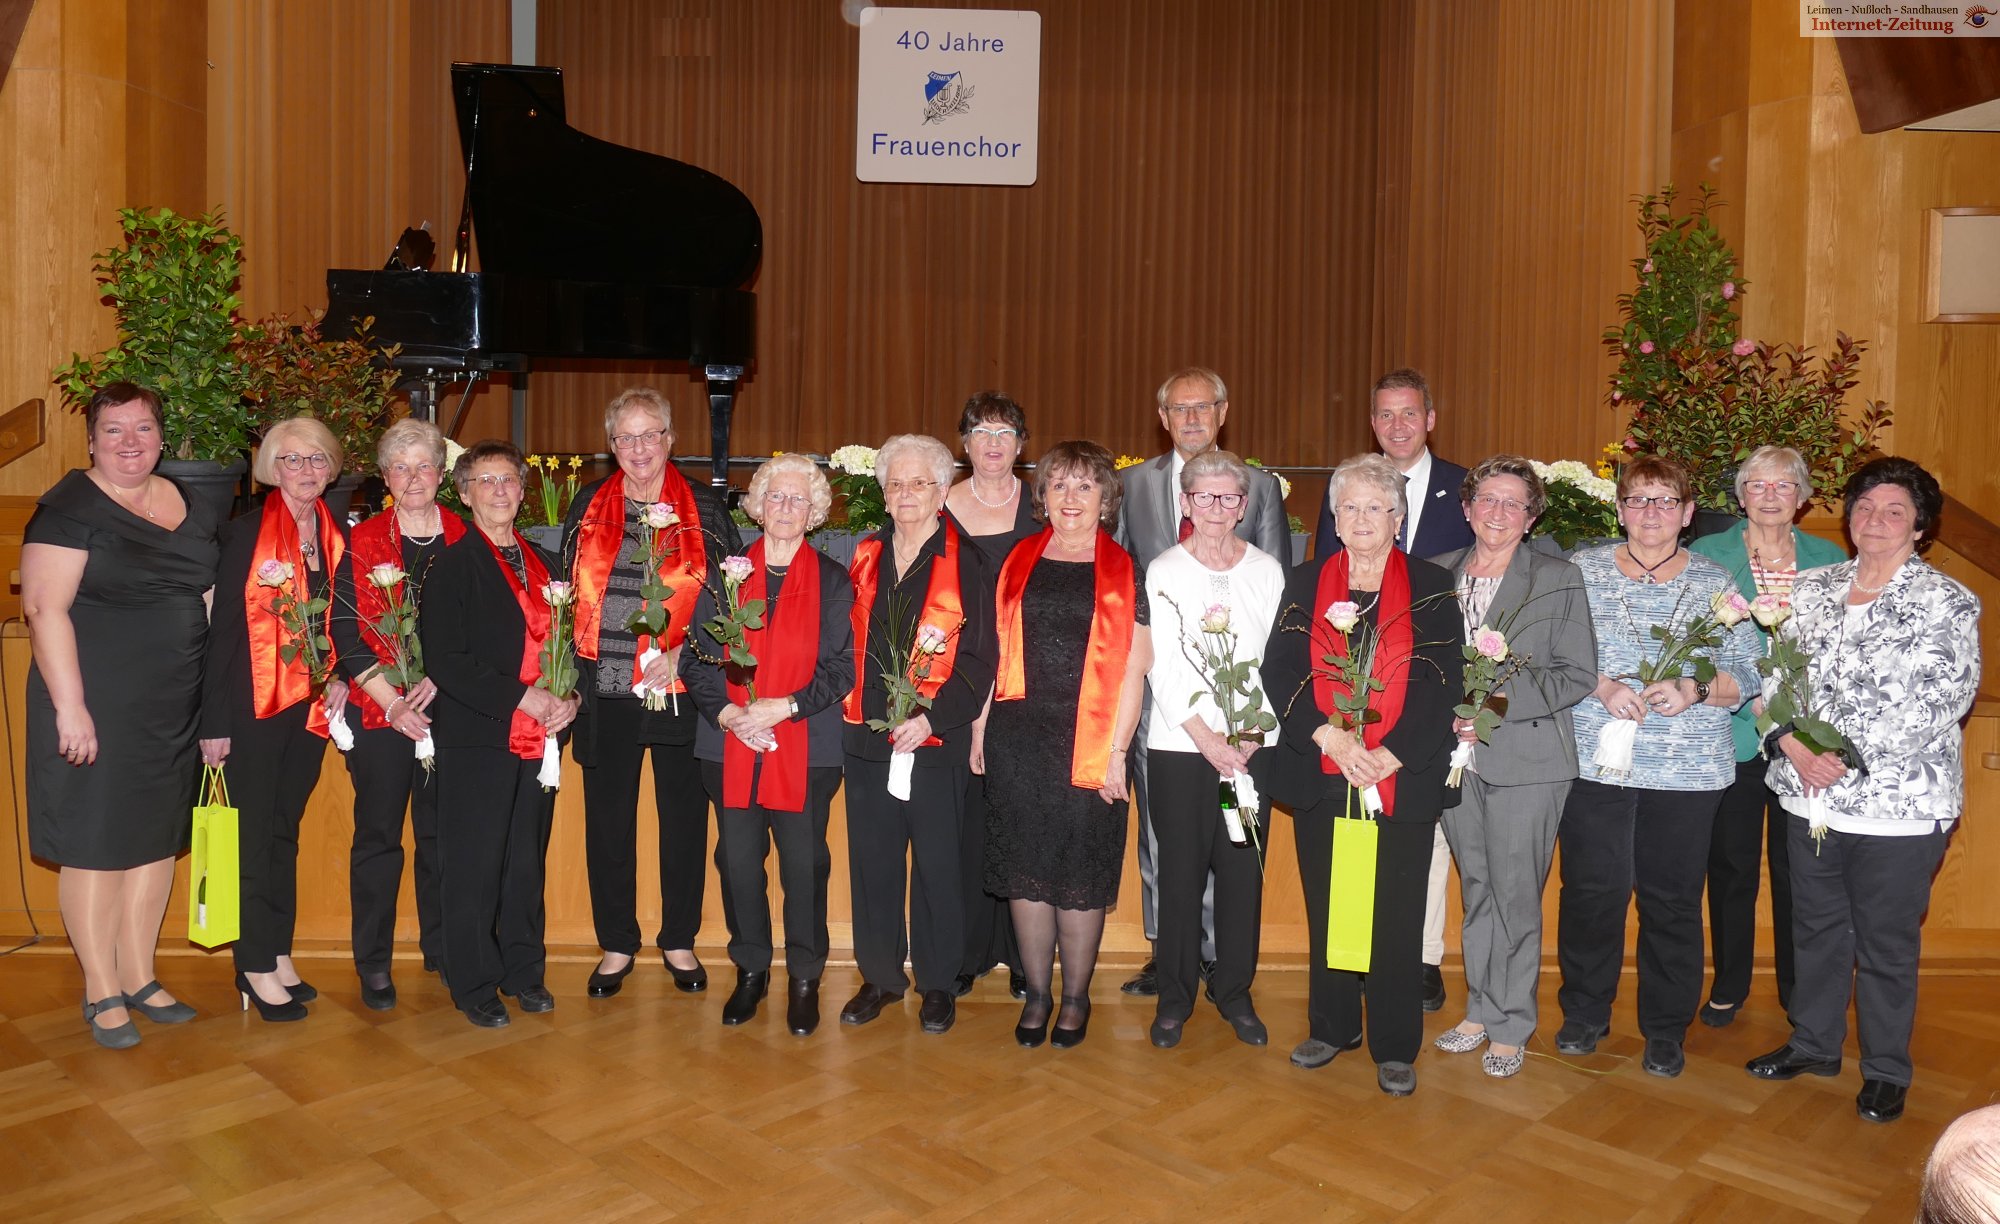 40 Jahre Frauenchor der Liedertafel - Ein denkwürdiger Konzertabend mit Ehrungen